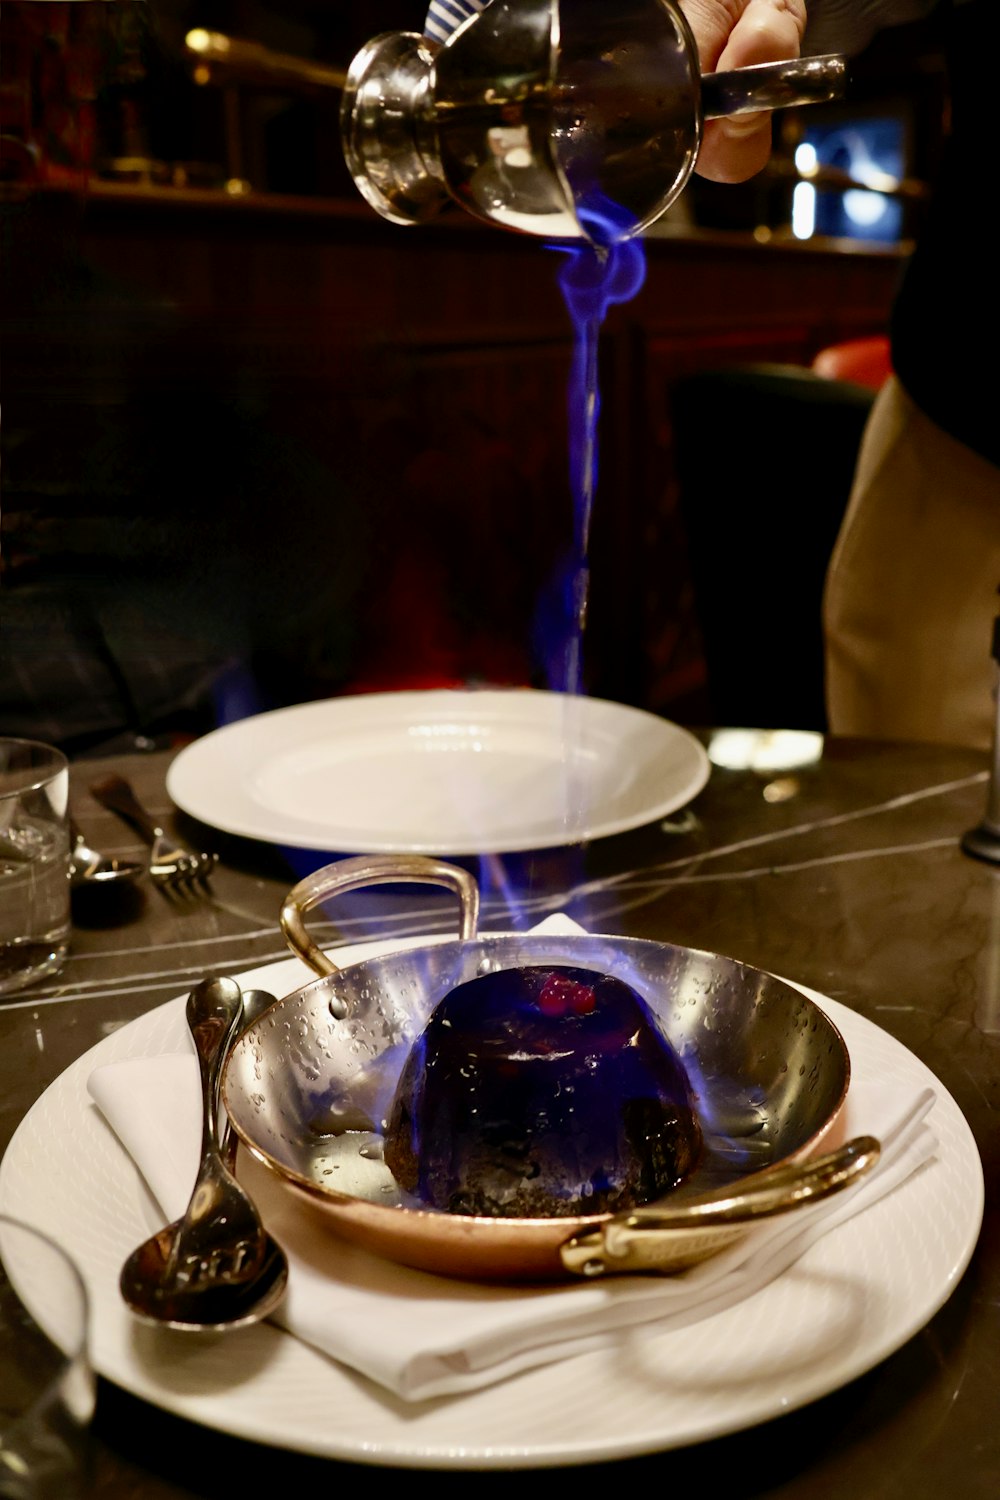 une personne versant un liquide bleu dans un bol sur une assiette